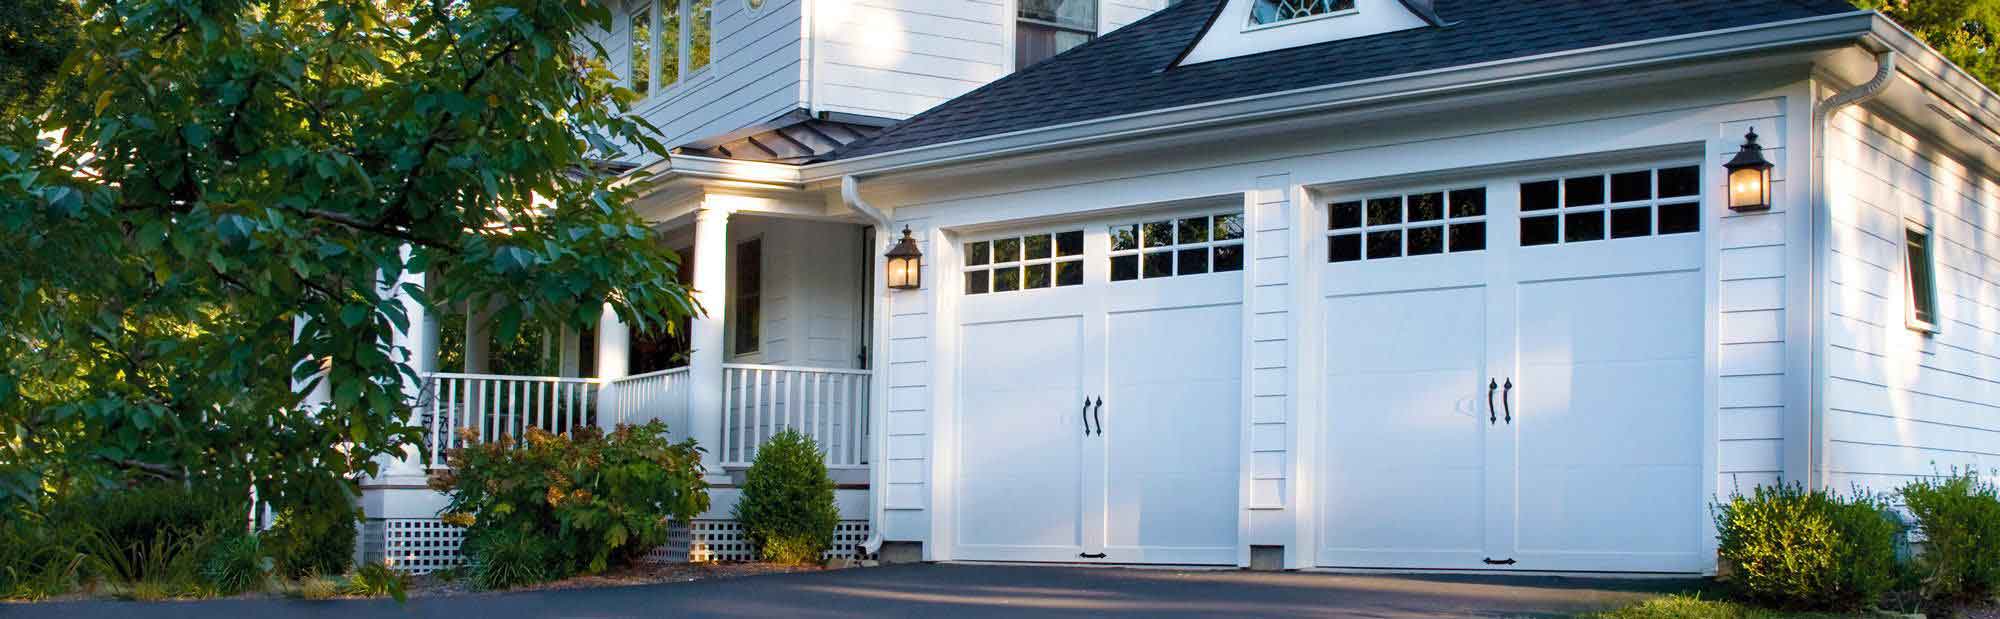 Garage Door Repair And Replacement Services Whitby Garage Doors